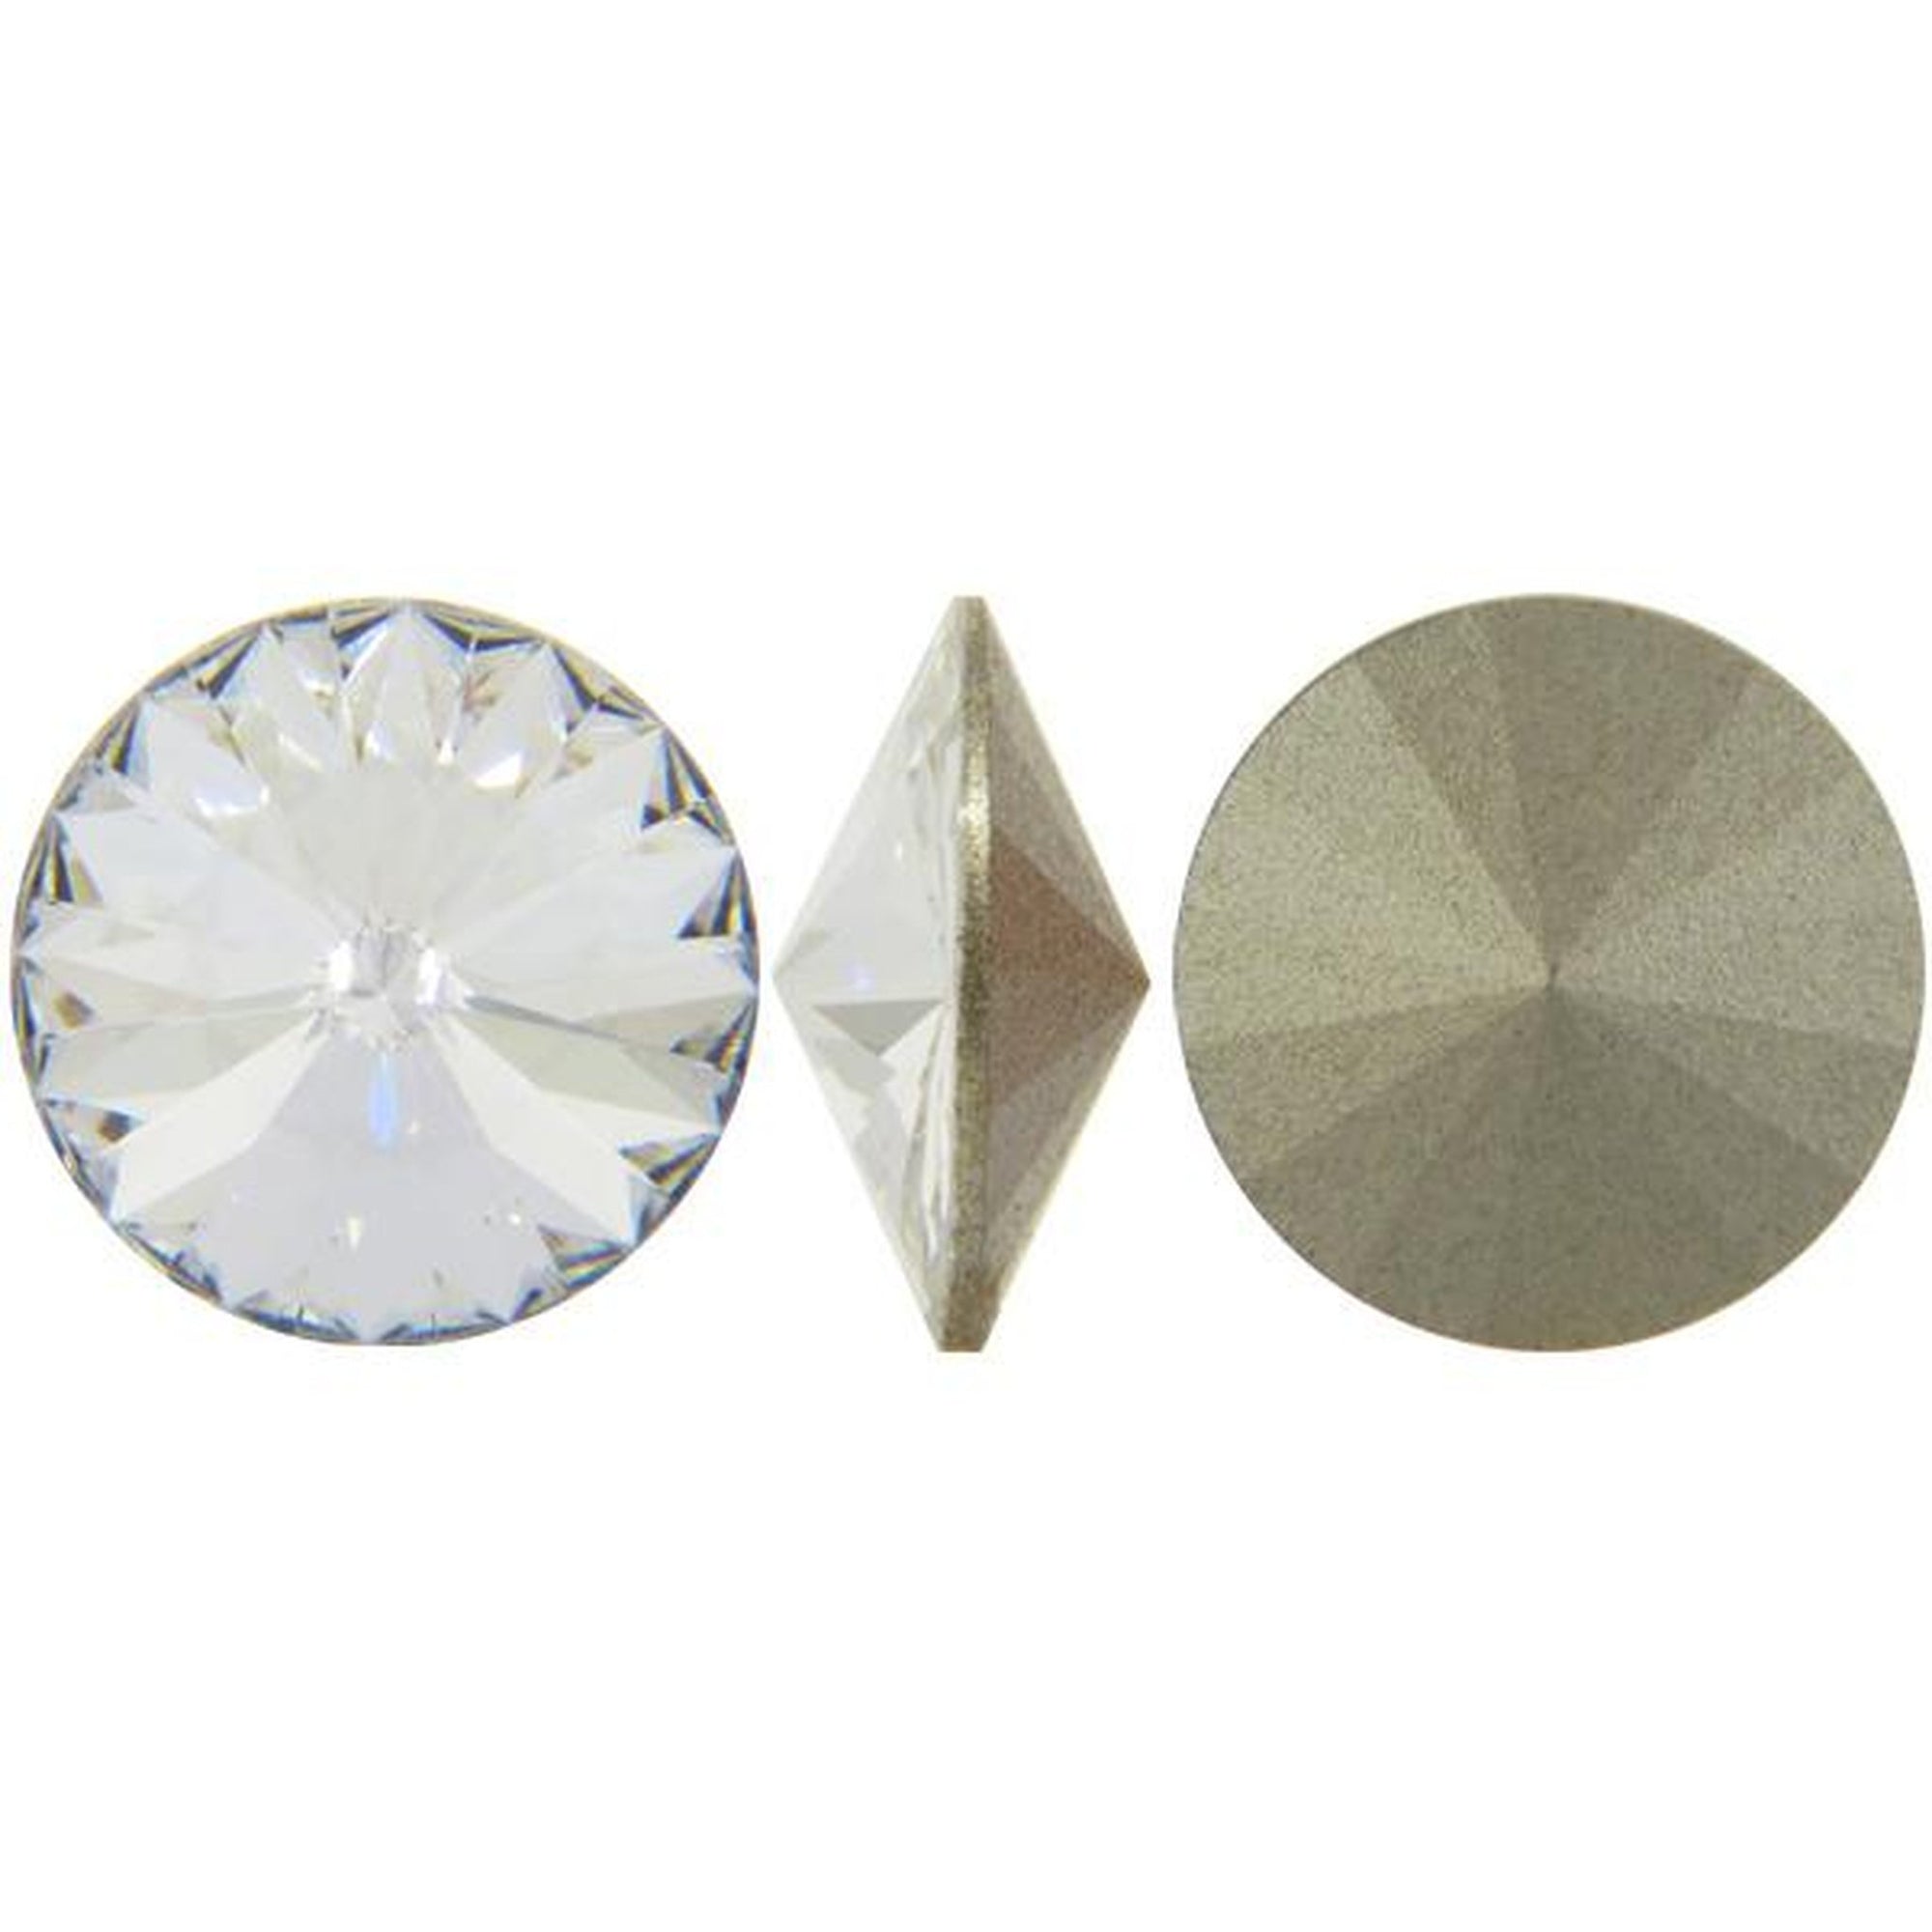 Swarovski's Xirius Crystal - One Step Closer To The Diamond